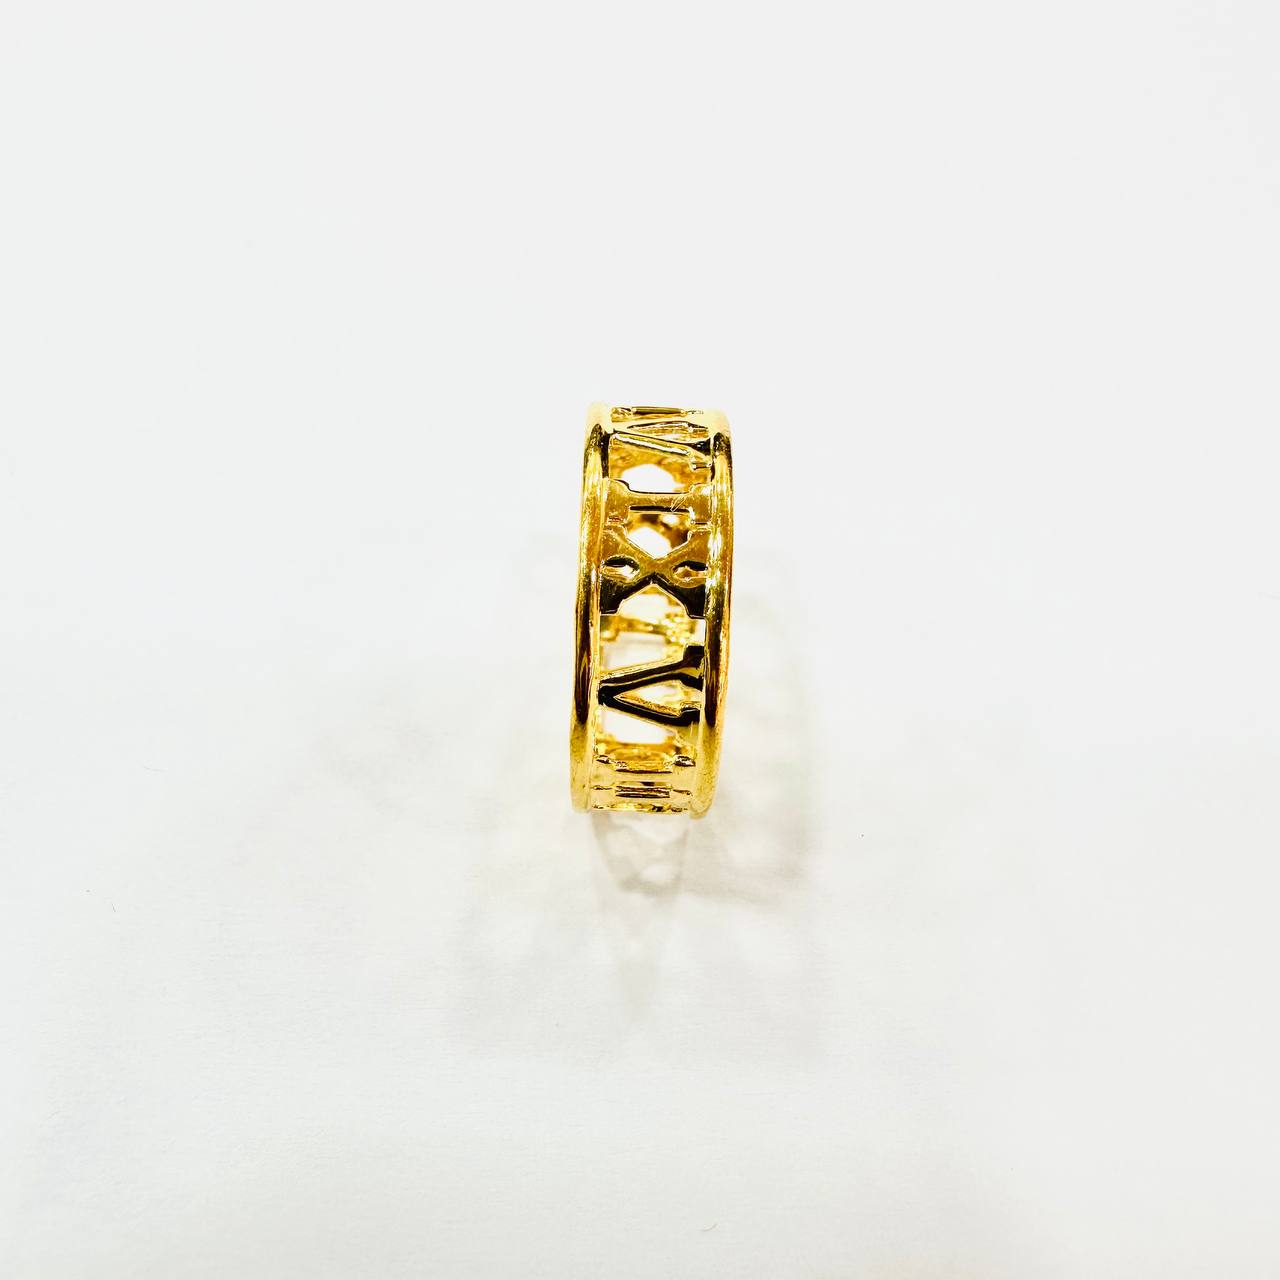 22k / 916 Gold Roman Ring V4-Rings-Best Gold Shop